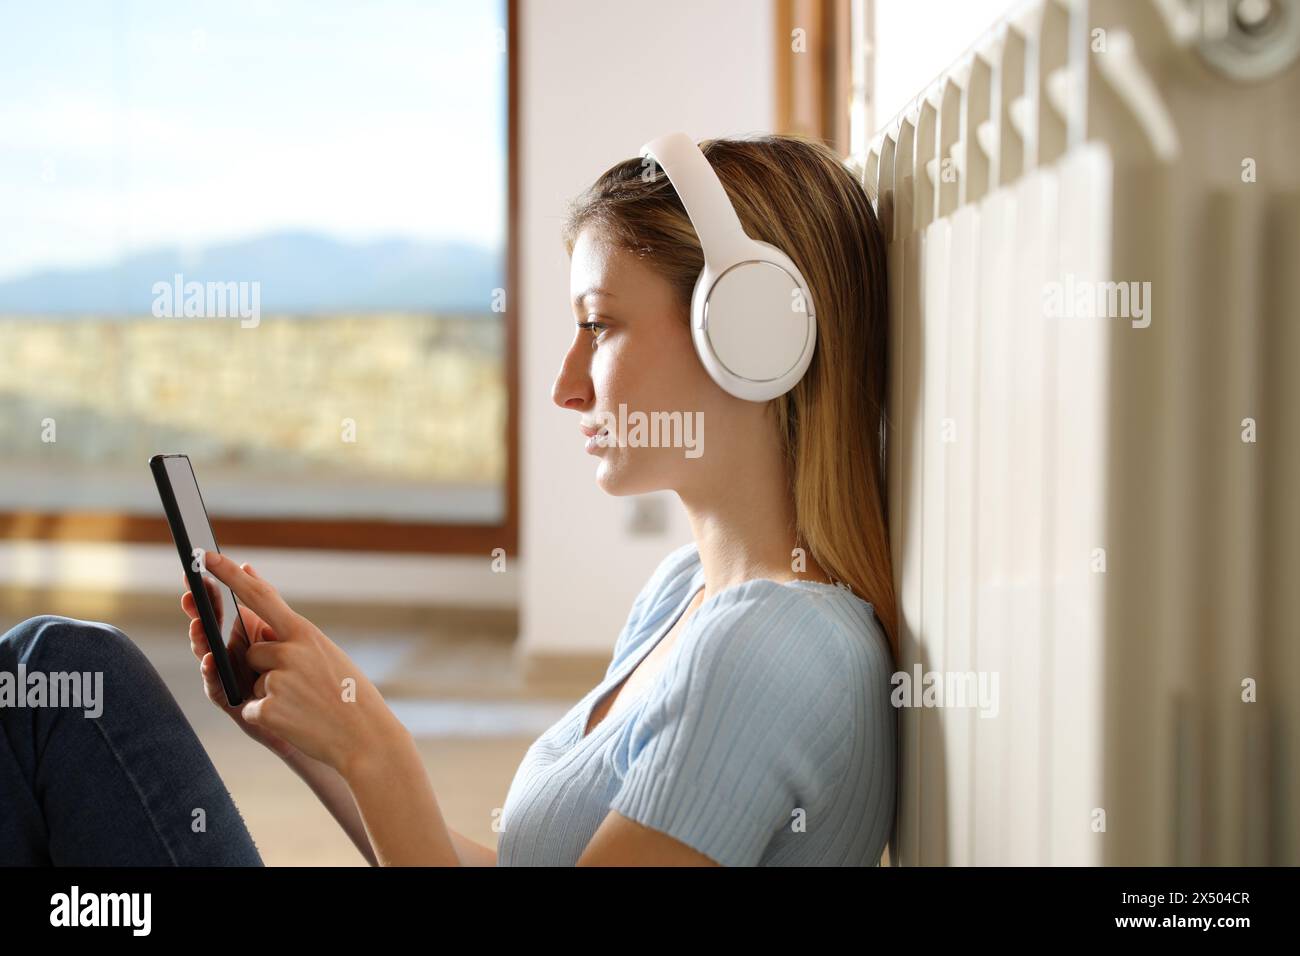 Profilo di una donna serius che si riscalda appoggiata al radiatore ascoltando musica con le cuffie e il telefono cellulare a casa Foto Stock